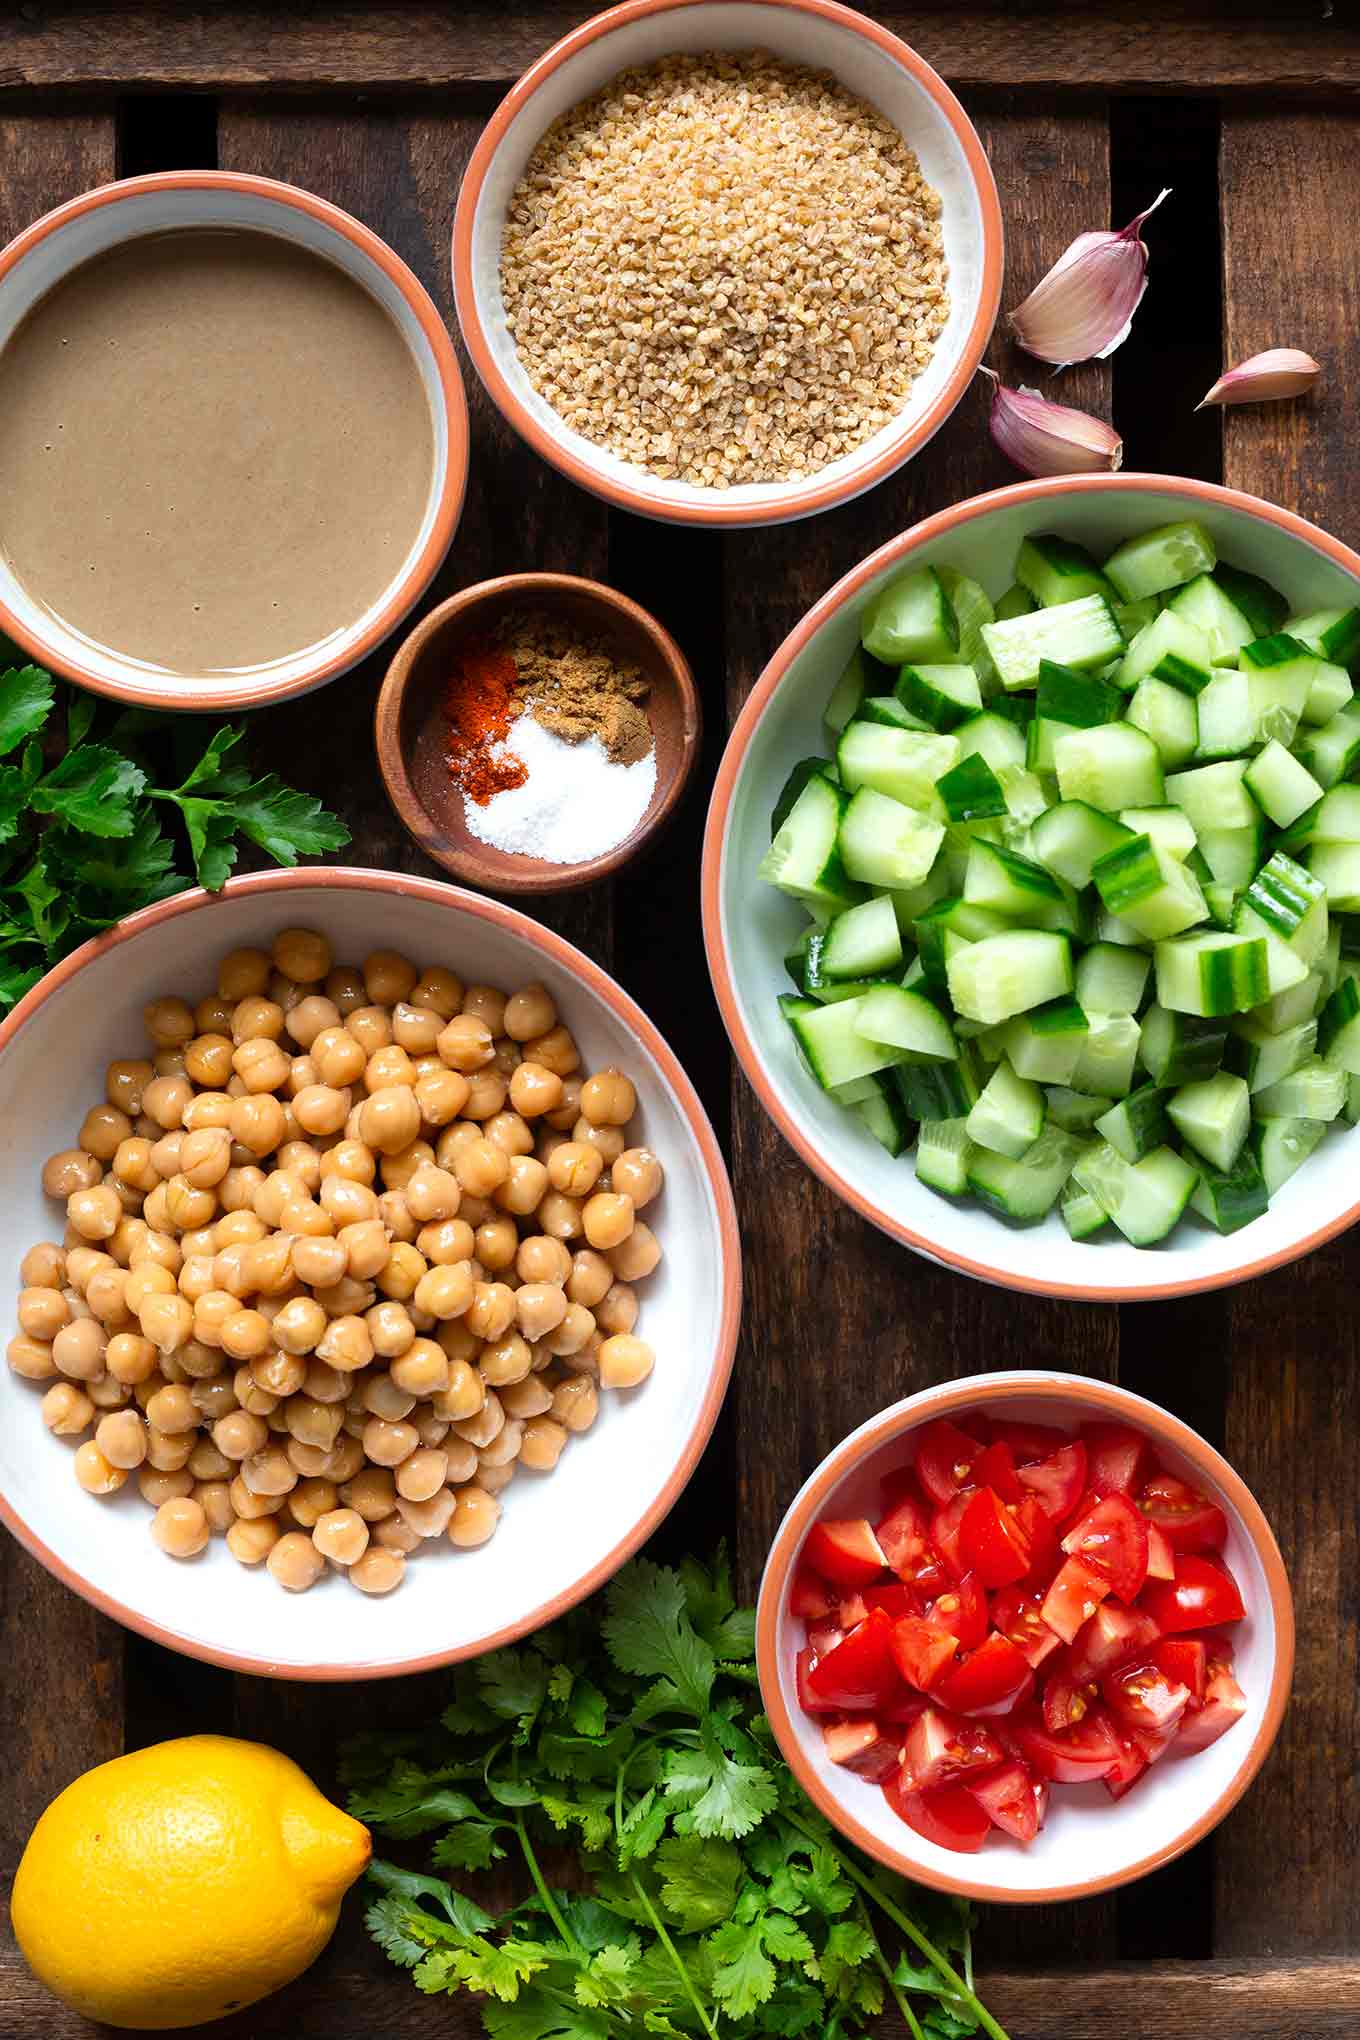 Schneller Falafelsalat ohne Frittieren, Formen und Co! Dieses einfache Rezept ist ein frisches, gesundes und verdammt leckeres Gericht für Tage, an denen es schnell gehen muss. - Kochkarussell.com #falafel #salat #rezept #gesund #schnellundeinfach #kochkarussell 